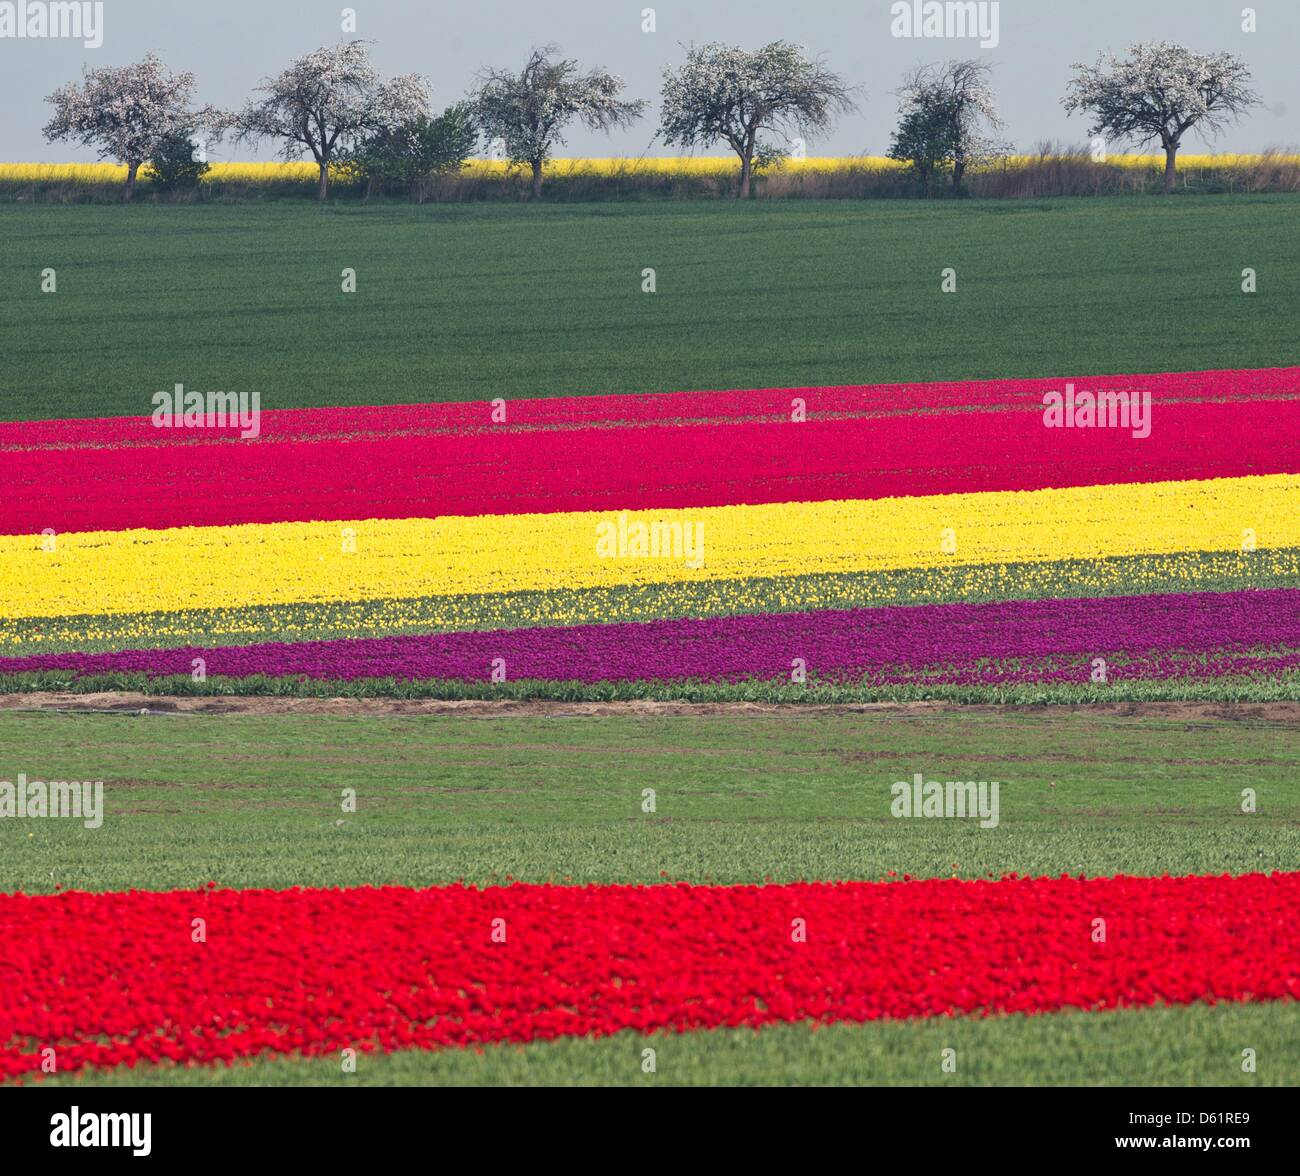 Tulipes fleurs sur un champ de la compagnie dans des cultures spéciales Degenhardt, Schwaneberg Allemagne, 30 avril 2012. Les tulipes sont plantés pour leurs lampes. Photo : JENS WOLF Banque D'Images